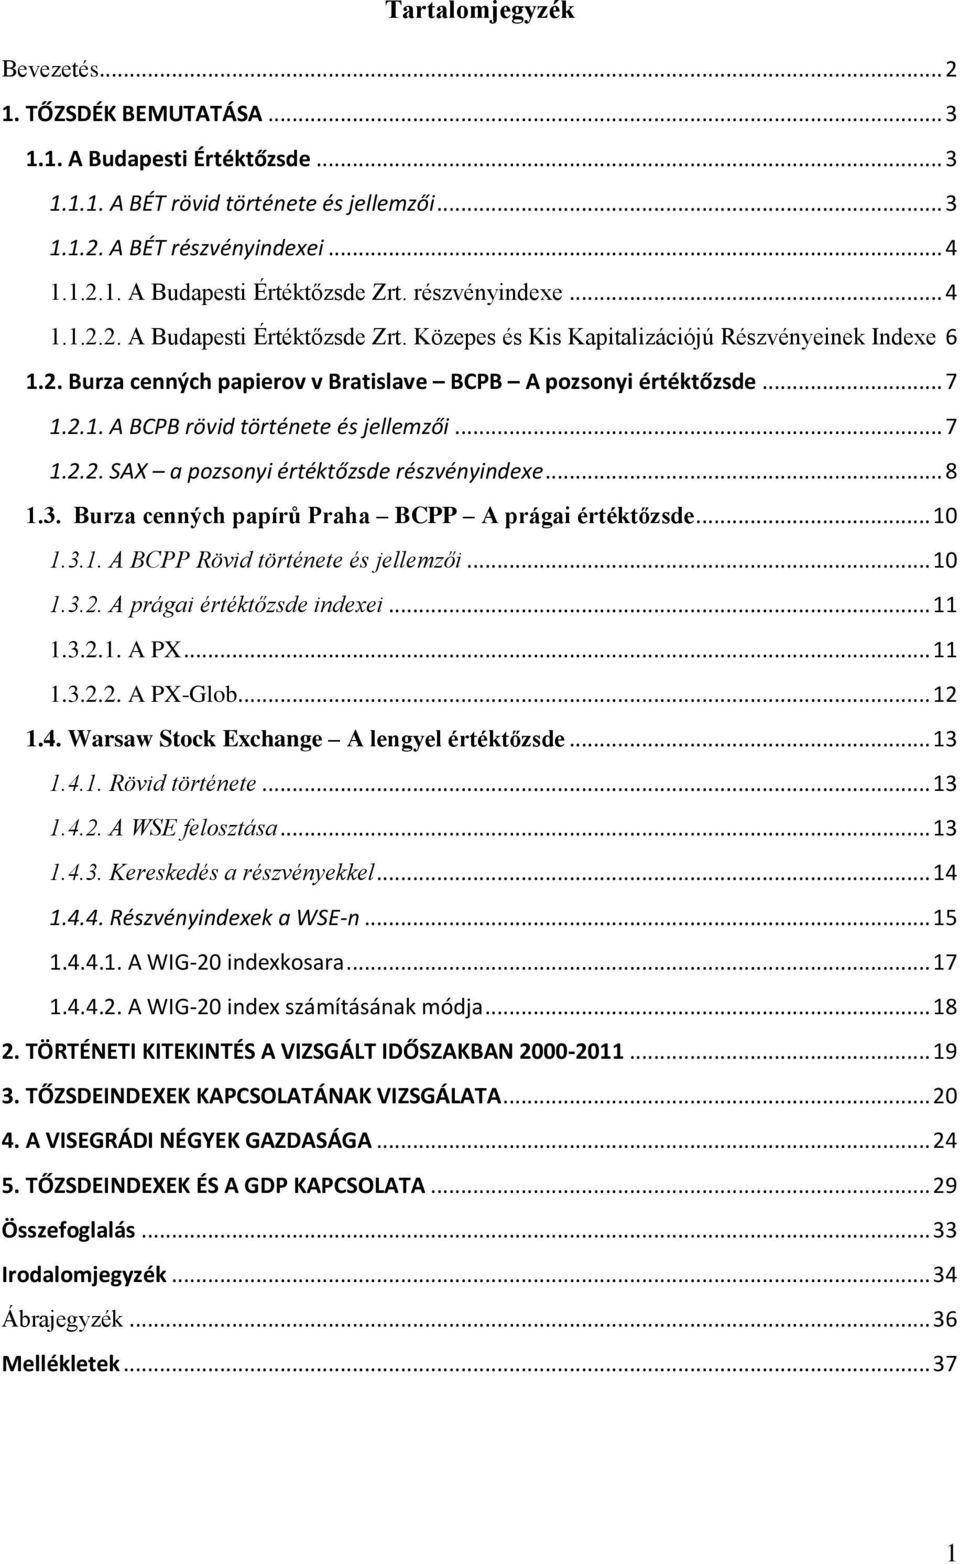 .. 7 1.2.2. SAX a pozsonyi értéktőzsde részvényindexe... 8 1.3. Burza cenných papírů Praha BCPP A prágai értéktőzsde... 10 1.3.1. A BCPP Rövid története és jellemzői... 10 1.3.2. A prágai értéktőzsde indexei.